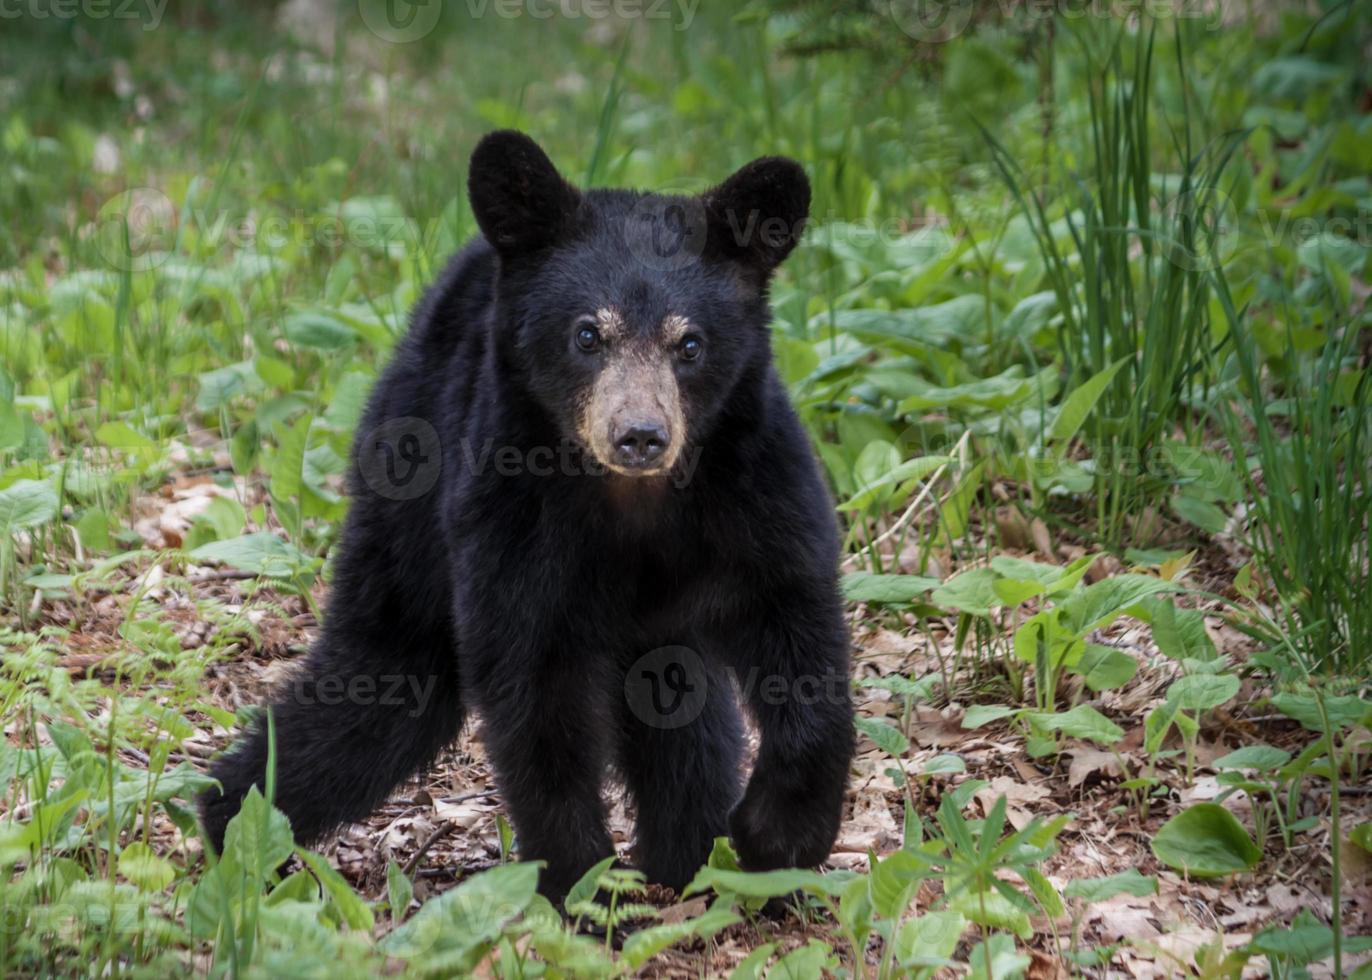 zwarte beer op madeline foto